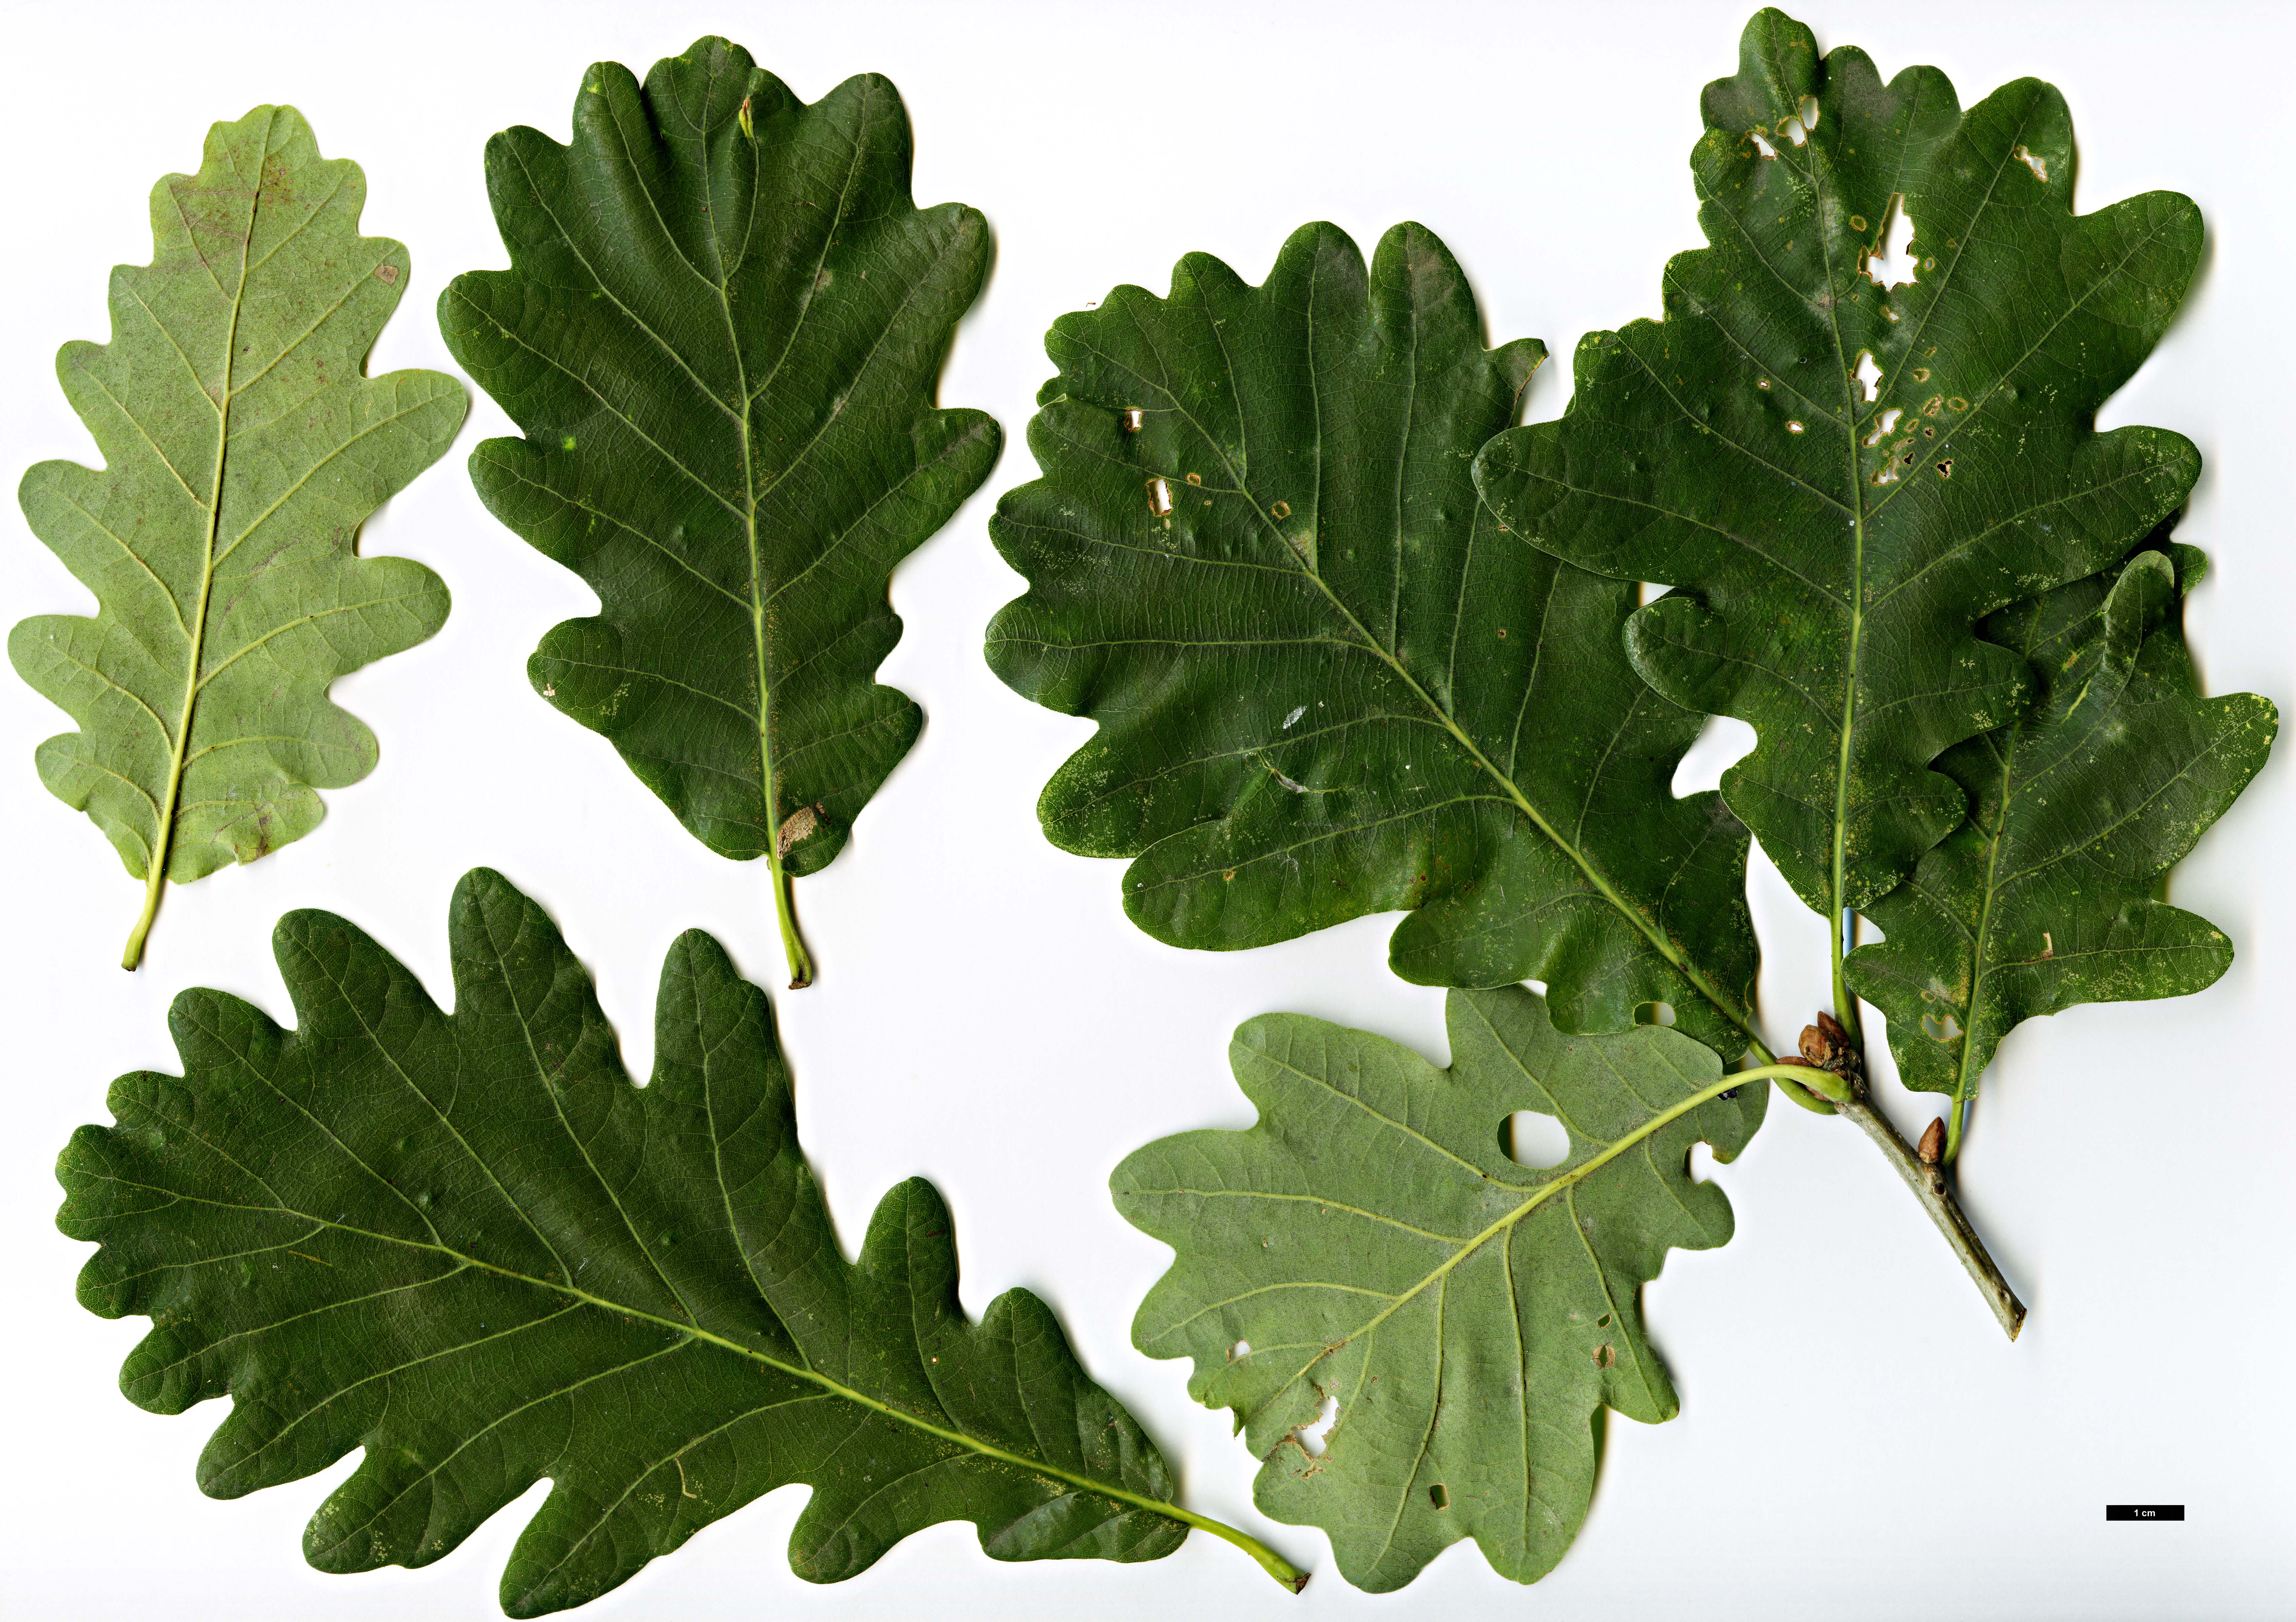 High resolution image: Family: Fagaceae - Genus: Quercus - Taxon: ×rosacea (Q.petraea × Q.robur)